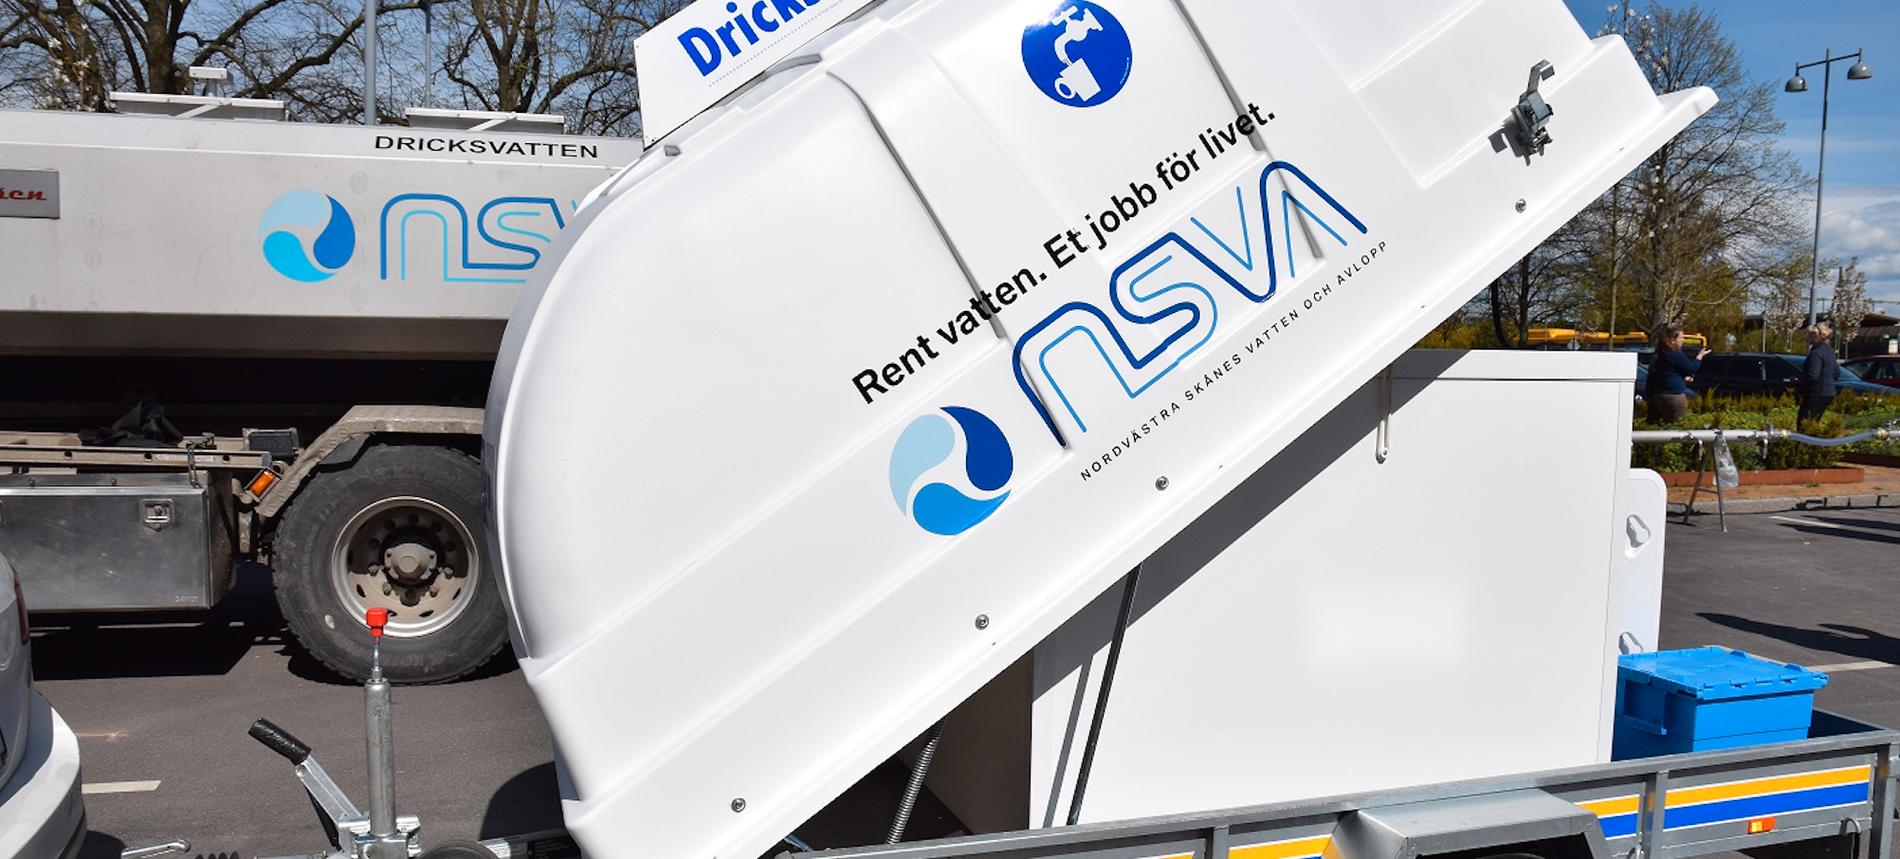 Nordvästra Skånes Vatten och Avlopp har fått ensamrätten till sin logotyp med vattendropparna upphävd.